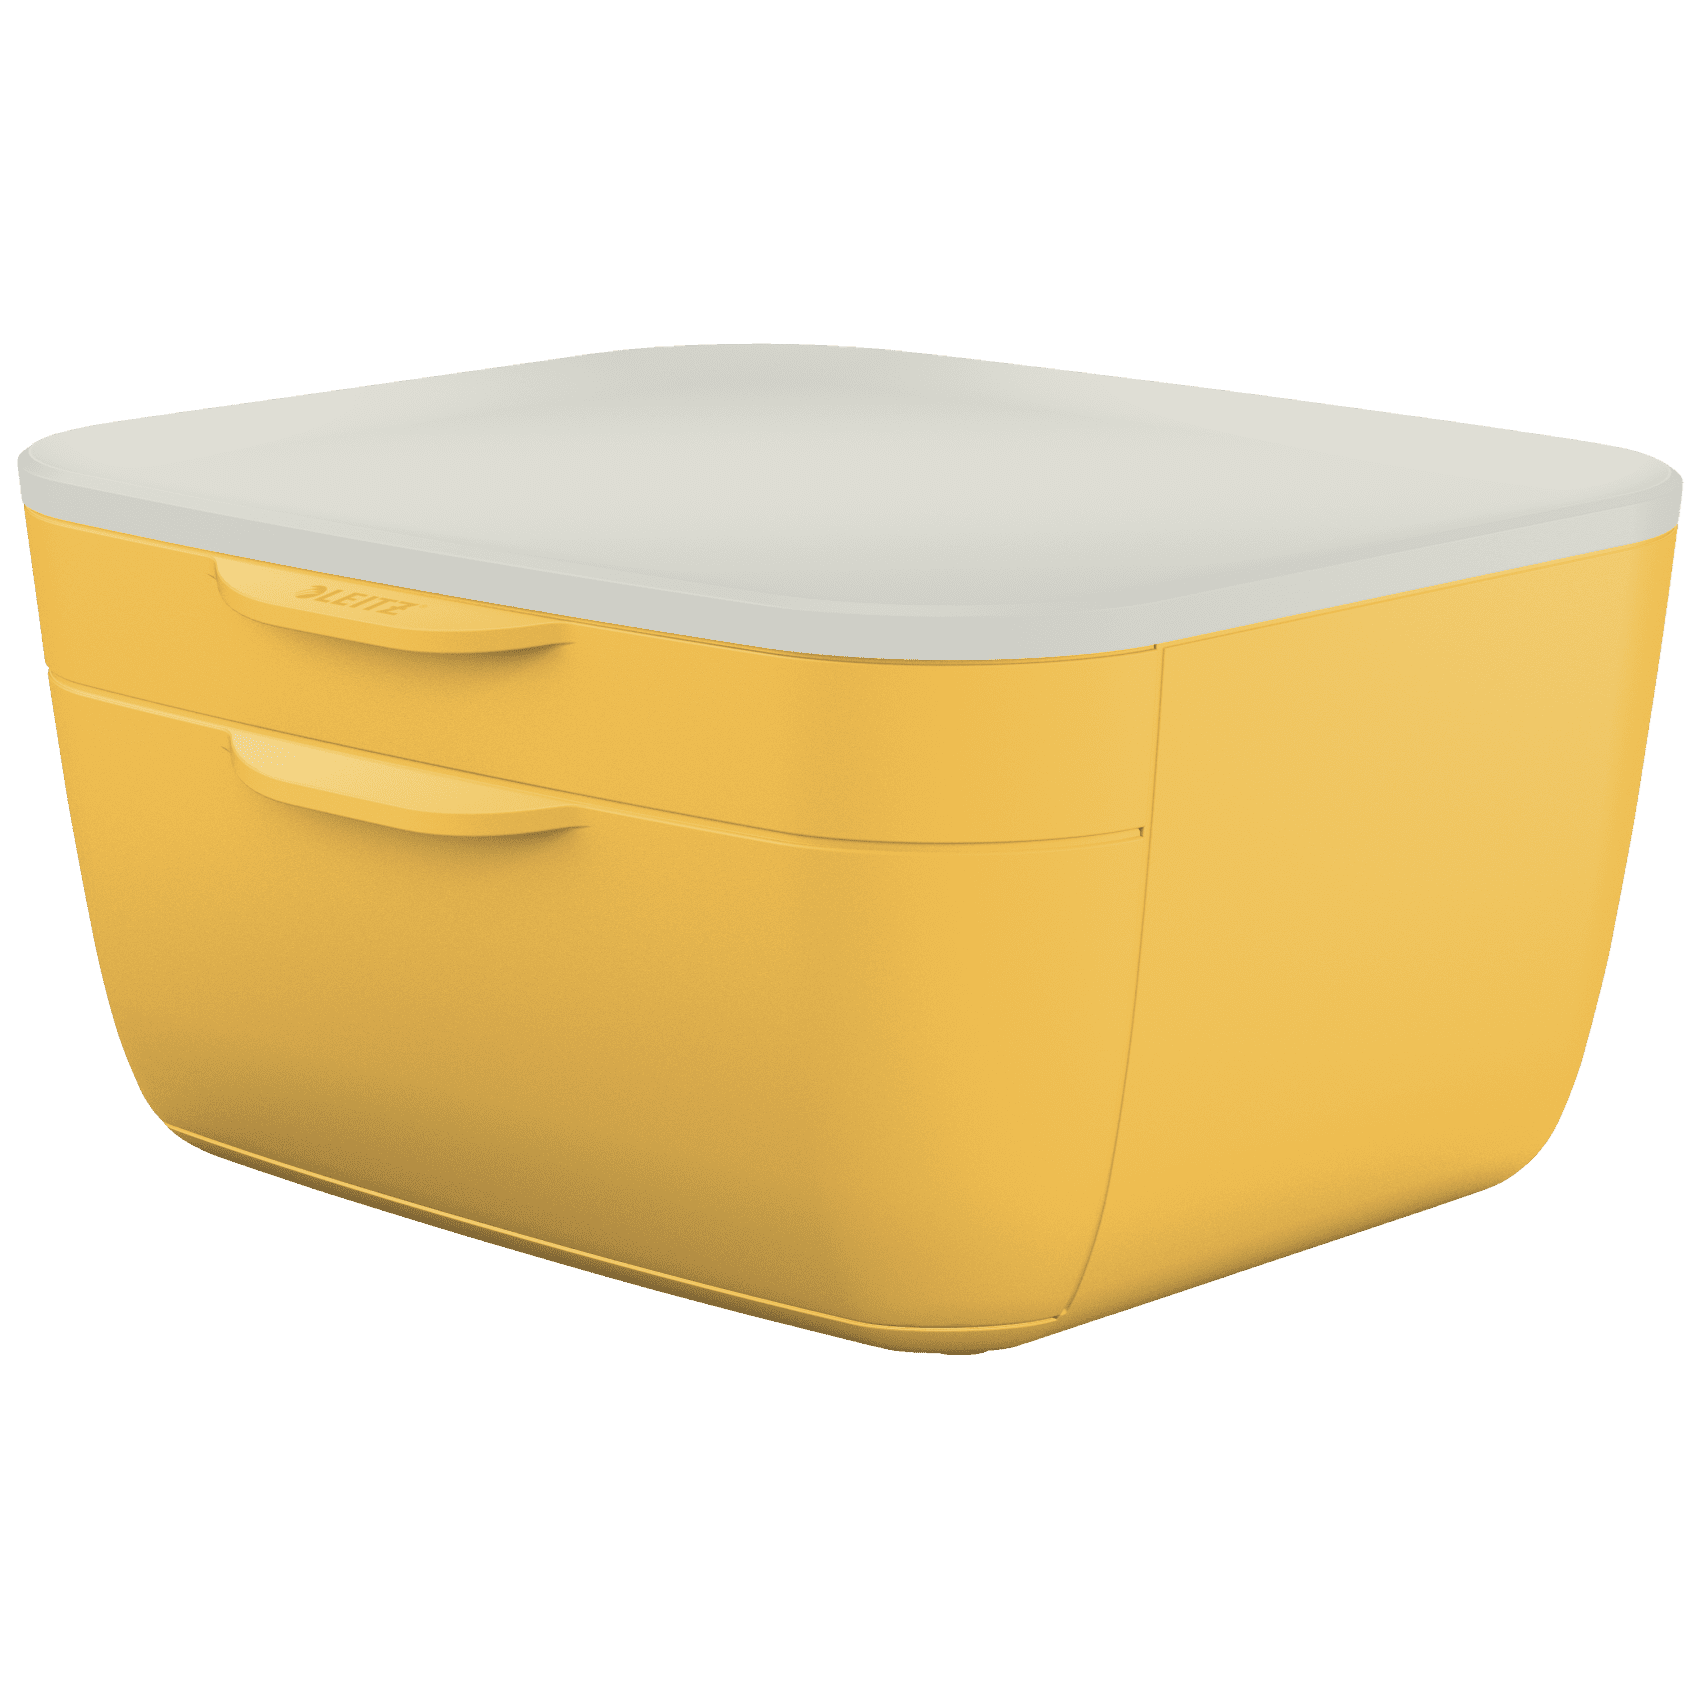 Zásuvkový box Leitz Cosy, teplá žlutá